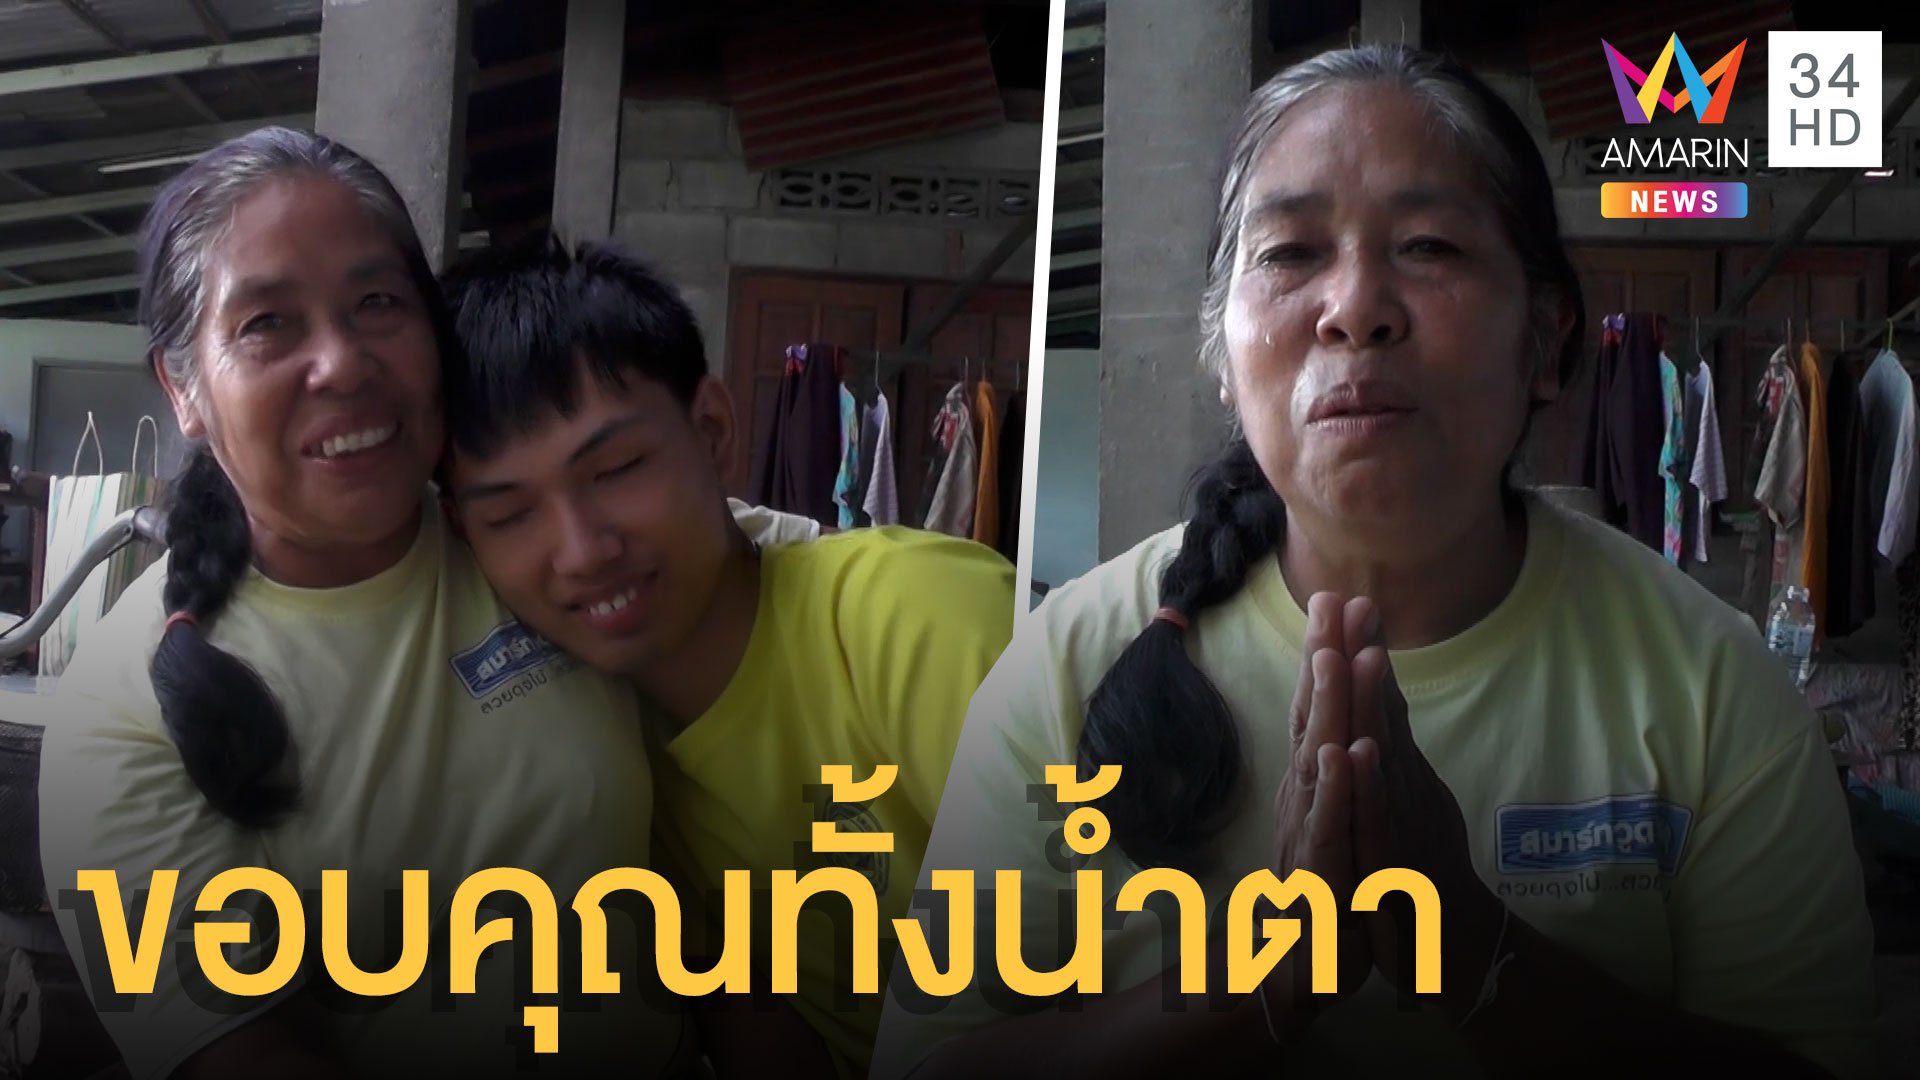 แม่เด็กเรียนดีขอบคุณทั้งน้ำตา คนไทยช่วยให้ลูกได้เรียนเภสัชยอดทะลุล้าน ปิดรับบริจาคแล้ว | ข่าวอรุณอมรินทร์ | 15 มิ.ย. 64 | AMARIN TVHD34